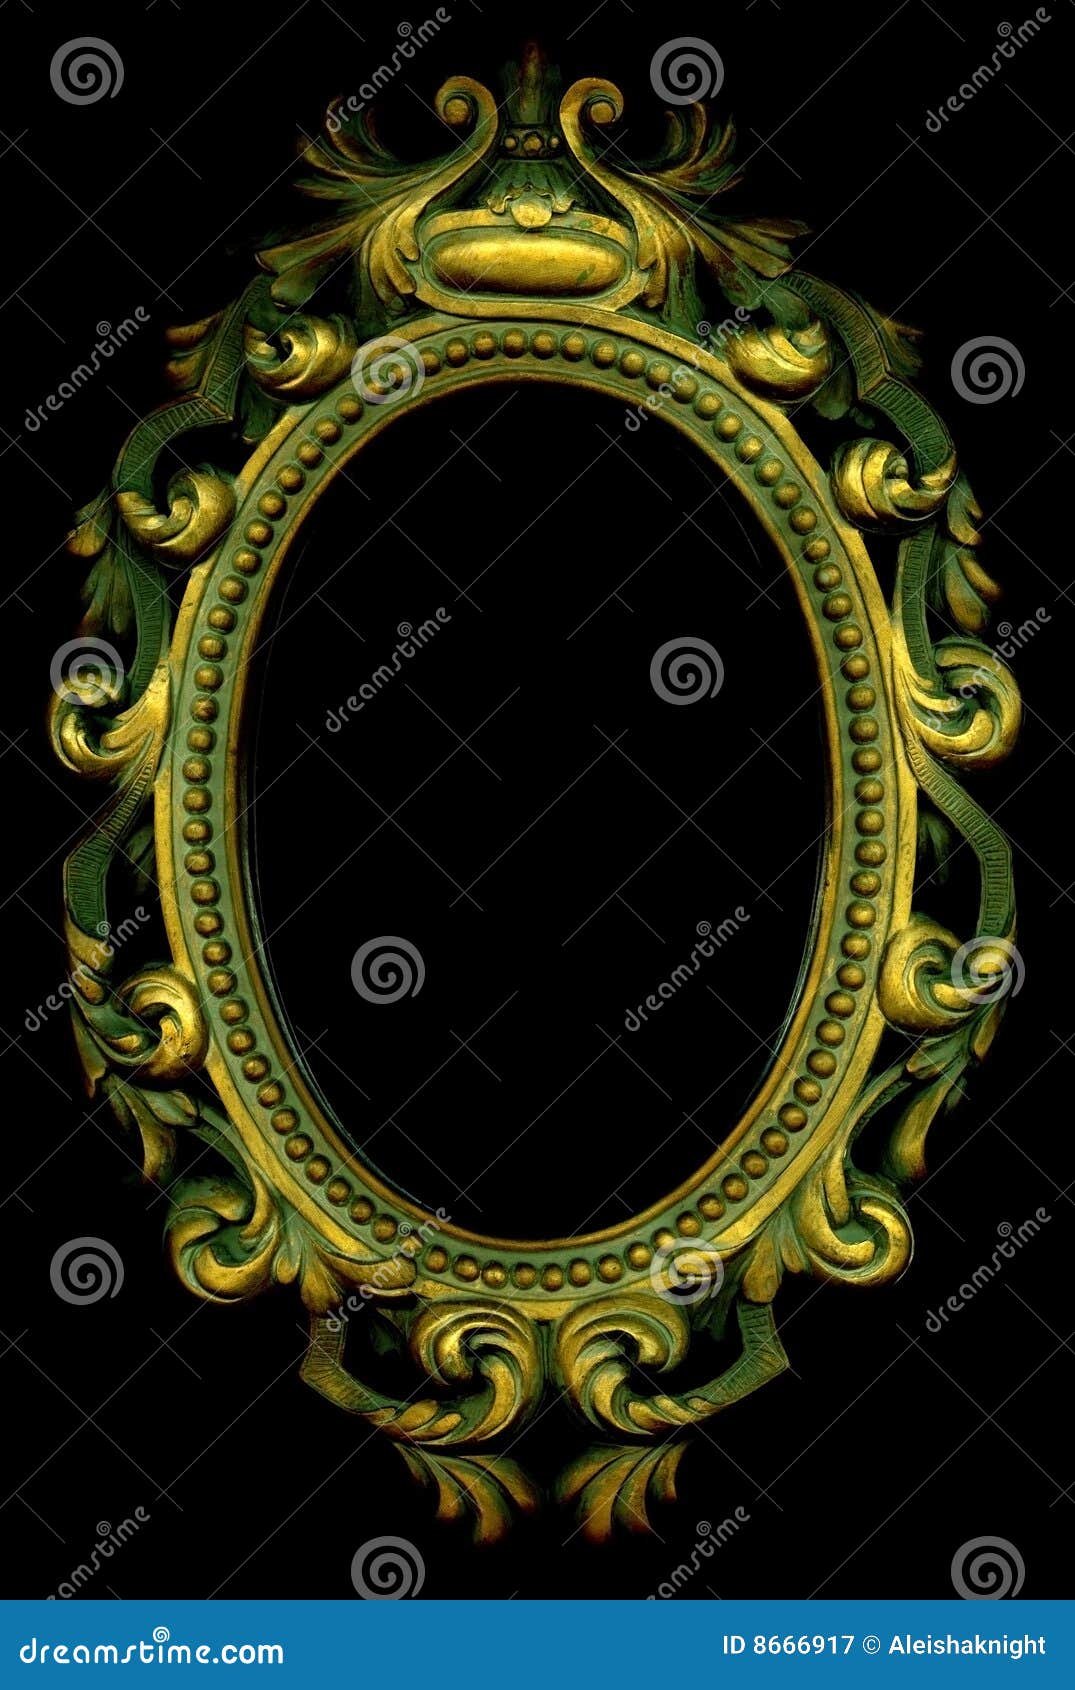 ornate gold frame